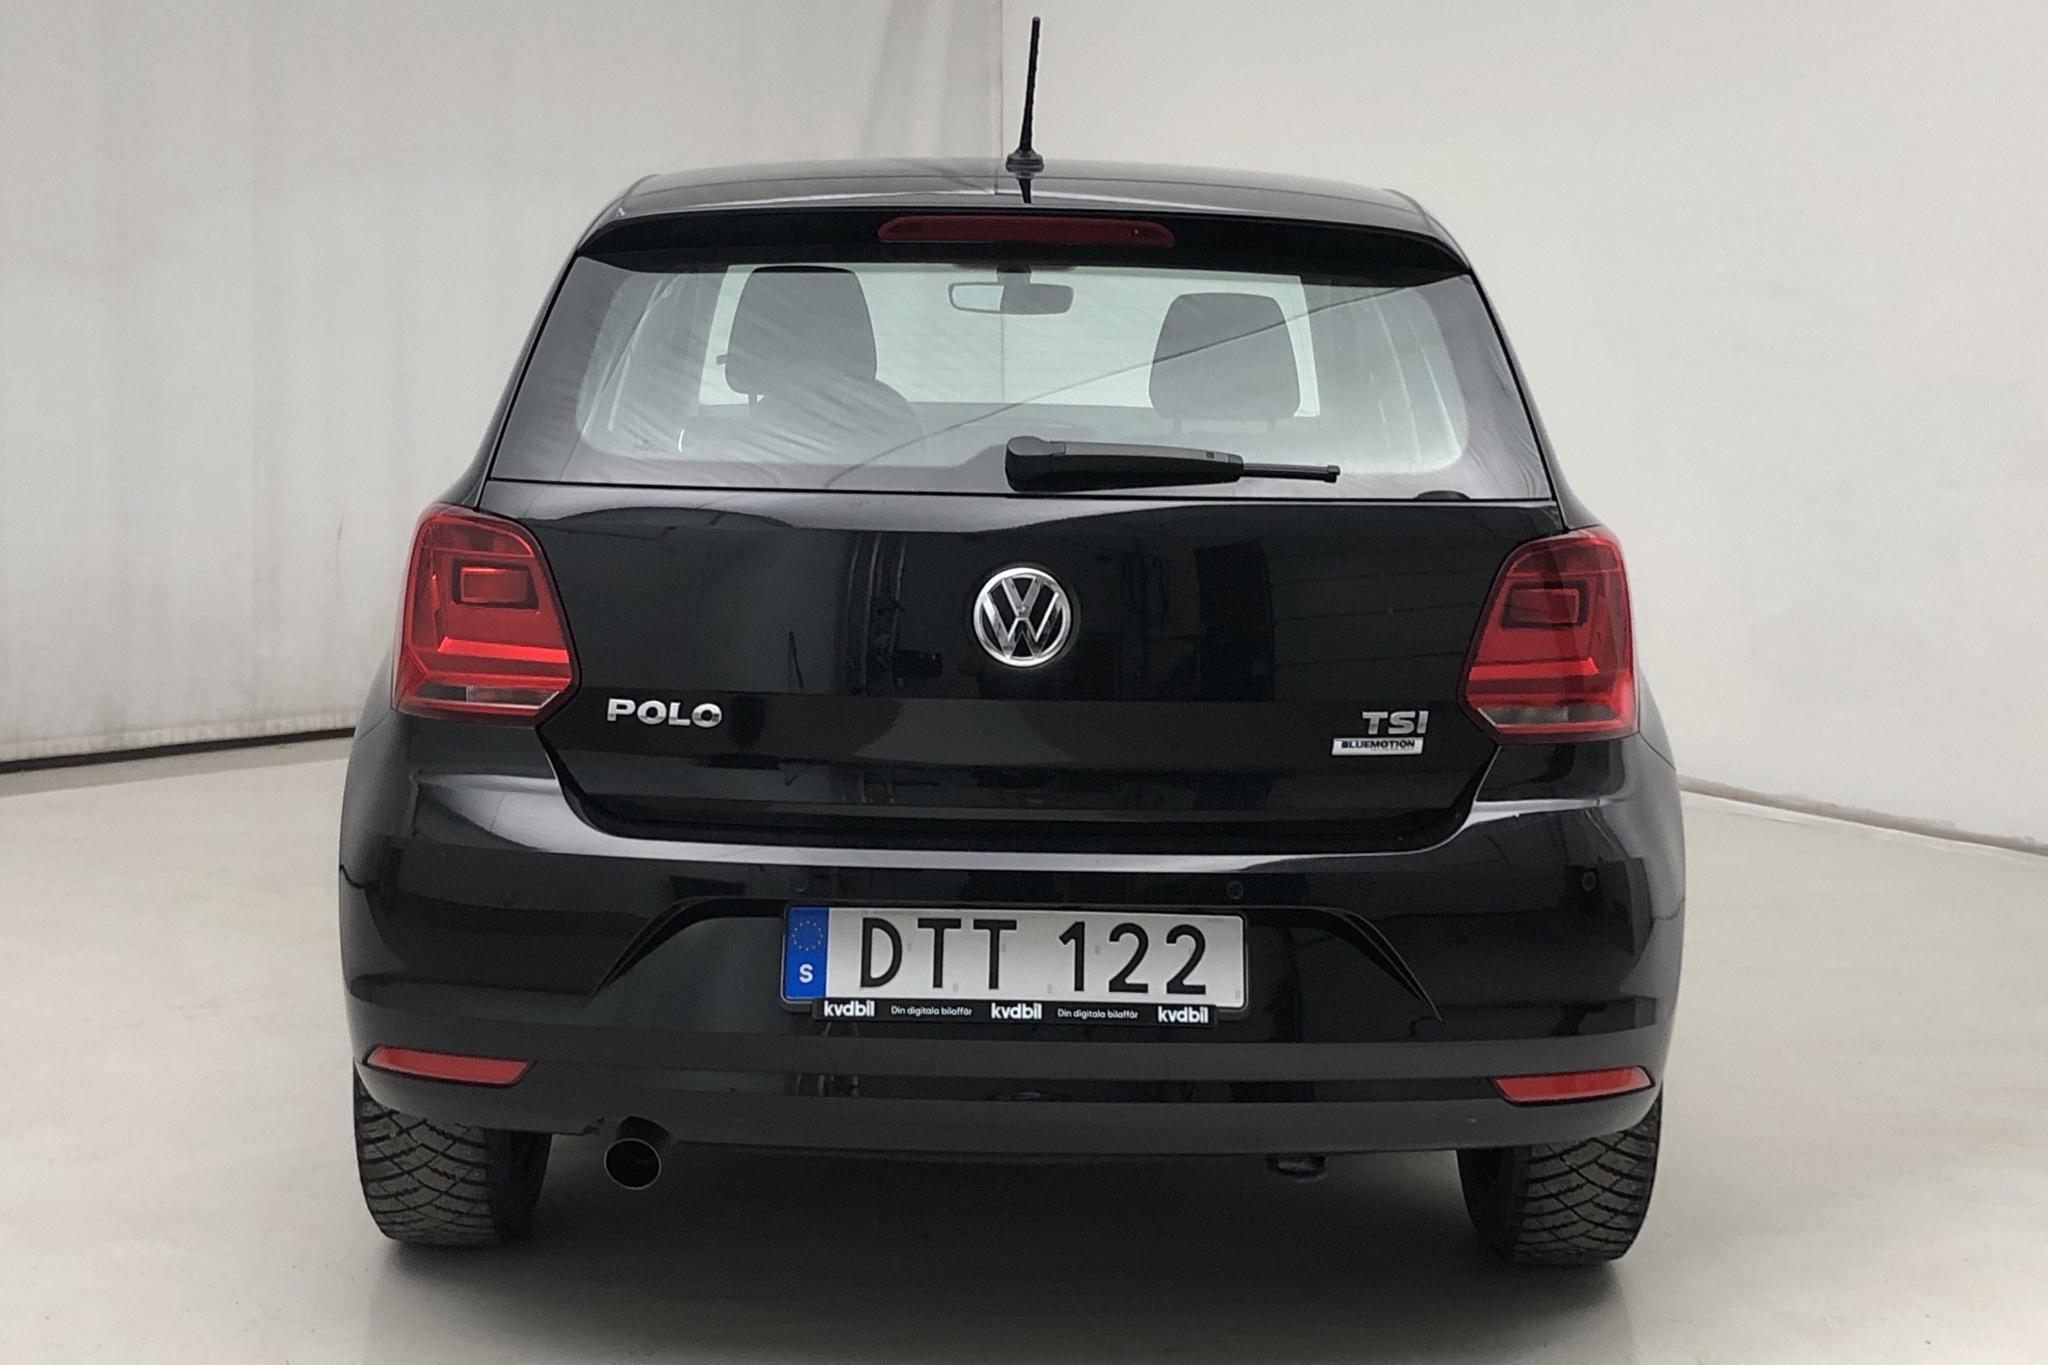 VW Polo 1.2 TSI 5dr (90hk) - 8 870 km - Automatic - black - 2015